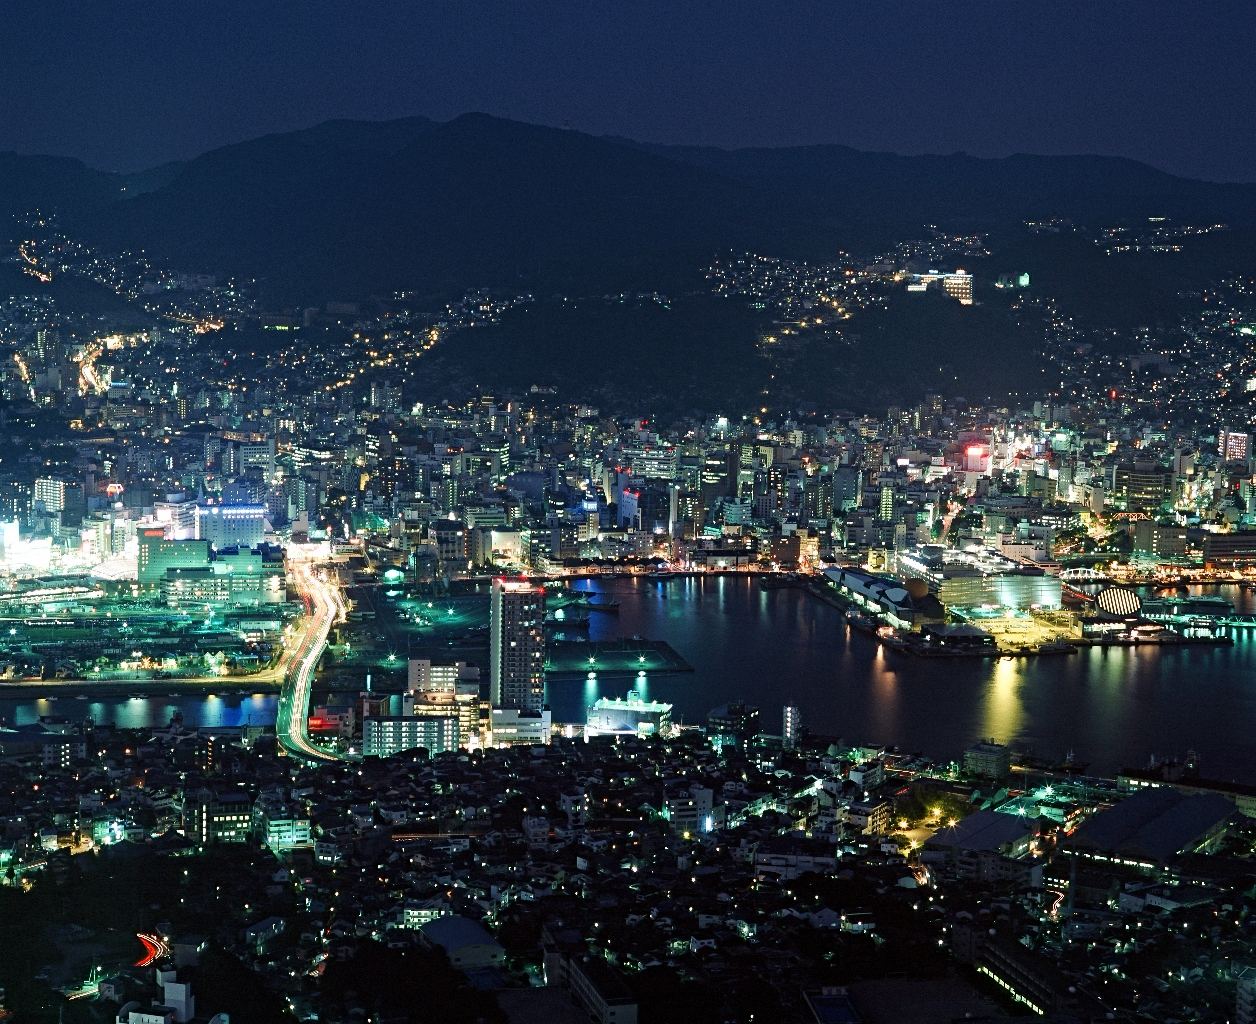 日本评出全球最美三大夜景,日本长崎排第三,中国这座城市居首!